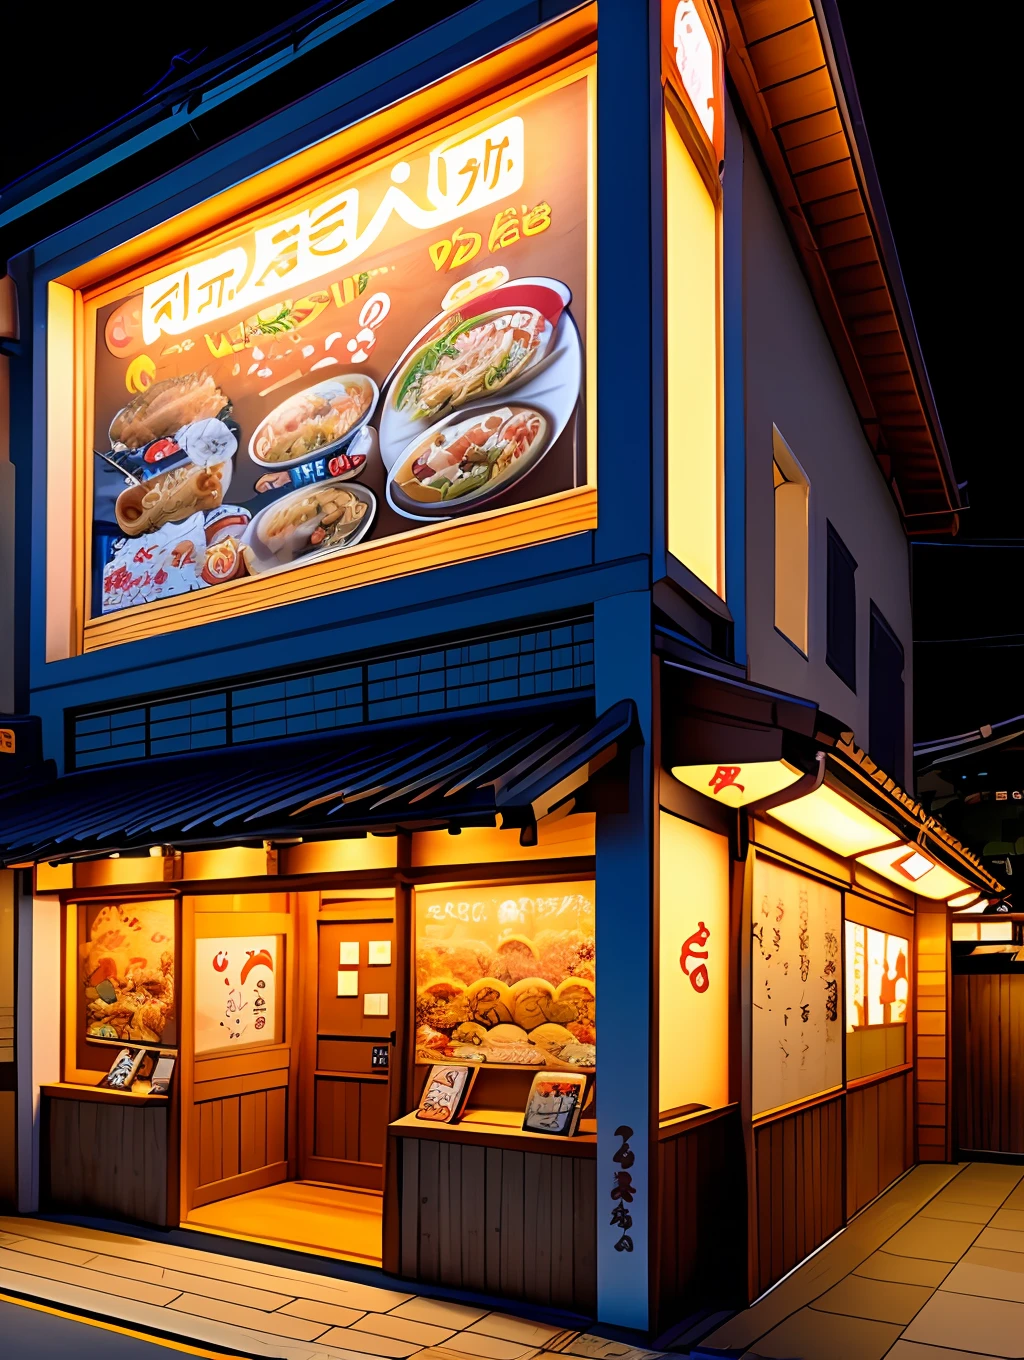 ラーメン店の外観, 様々な漫画のキャラクターで飾られた, 読みやすいメニューサイン, 日本, 夜景